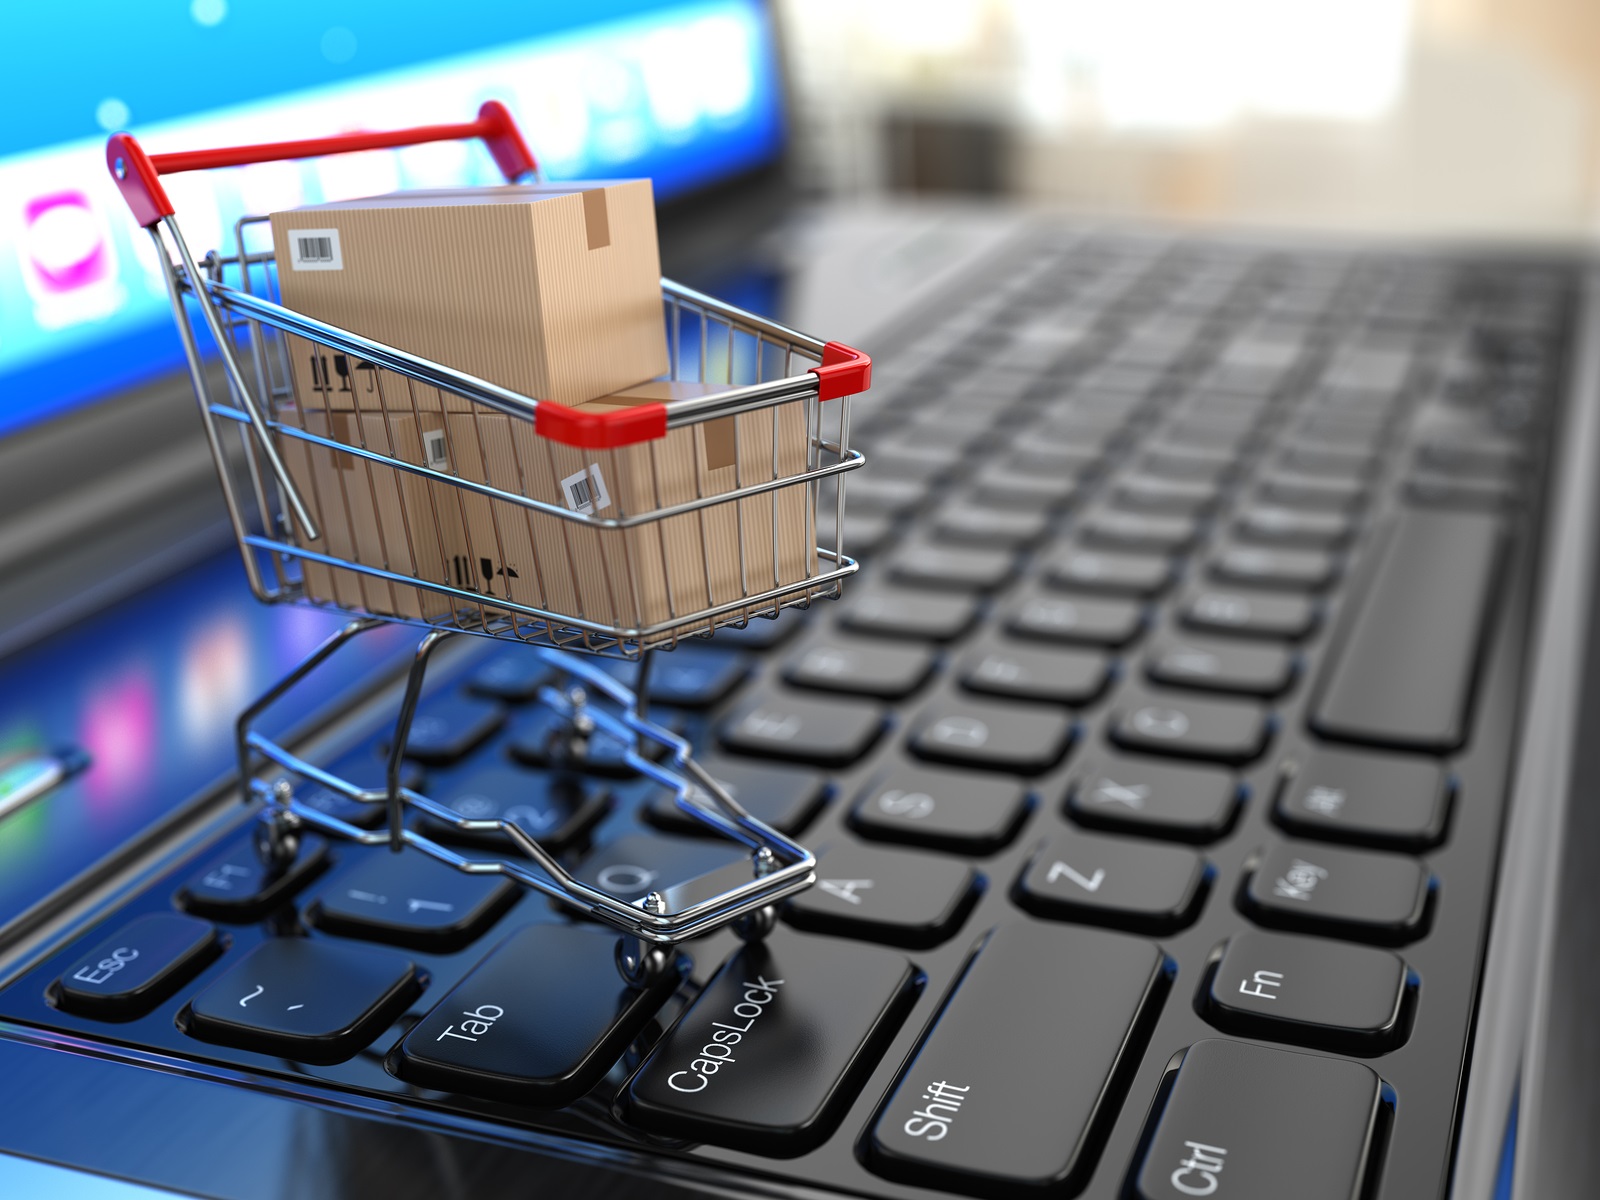 E-commerce: Como aumentar as vendas e superar as expectativas do cliente em 2019?